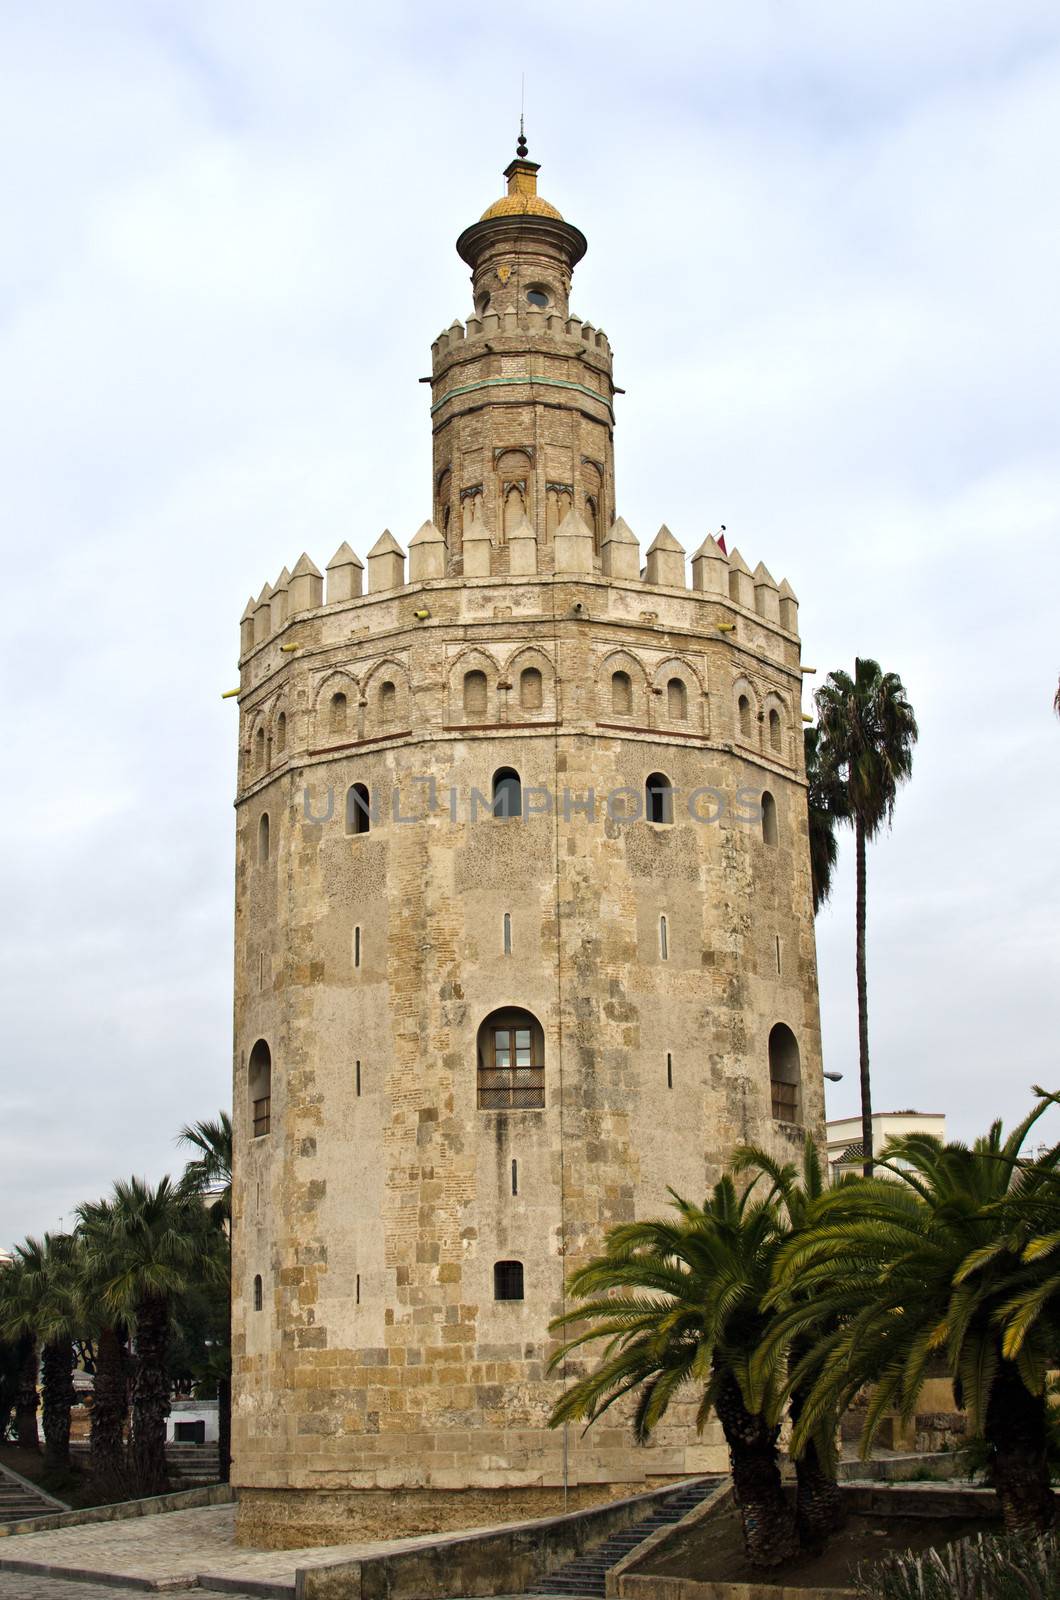 torre del oro in sevilla